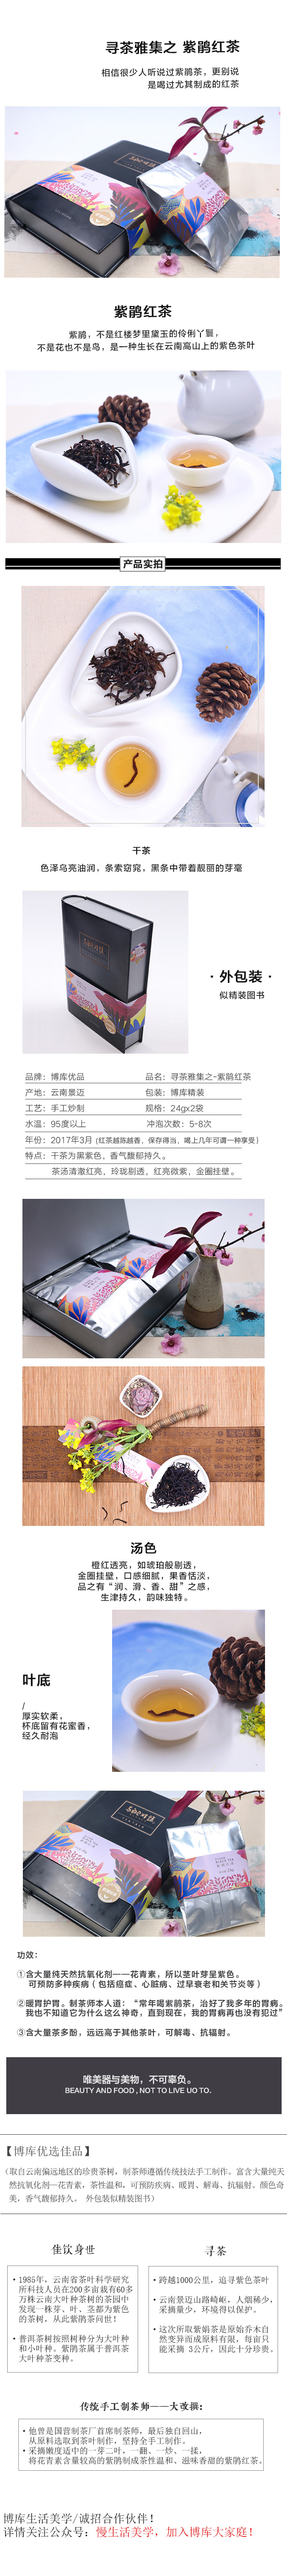 20170522紫鹃红茶.jpg